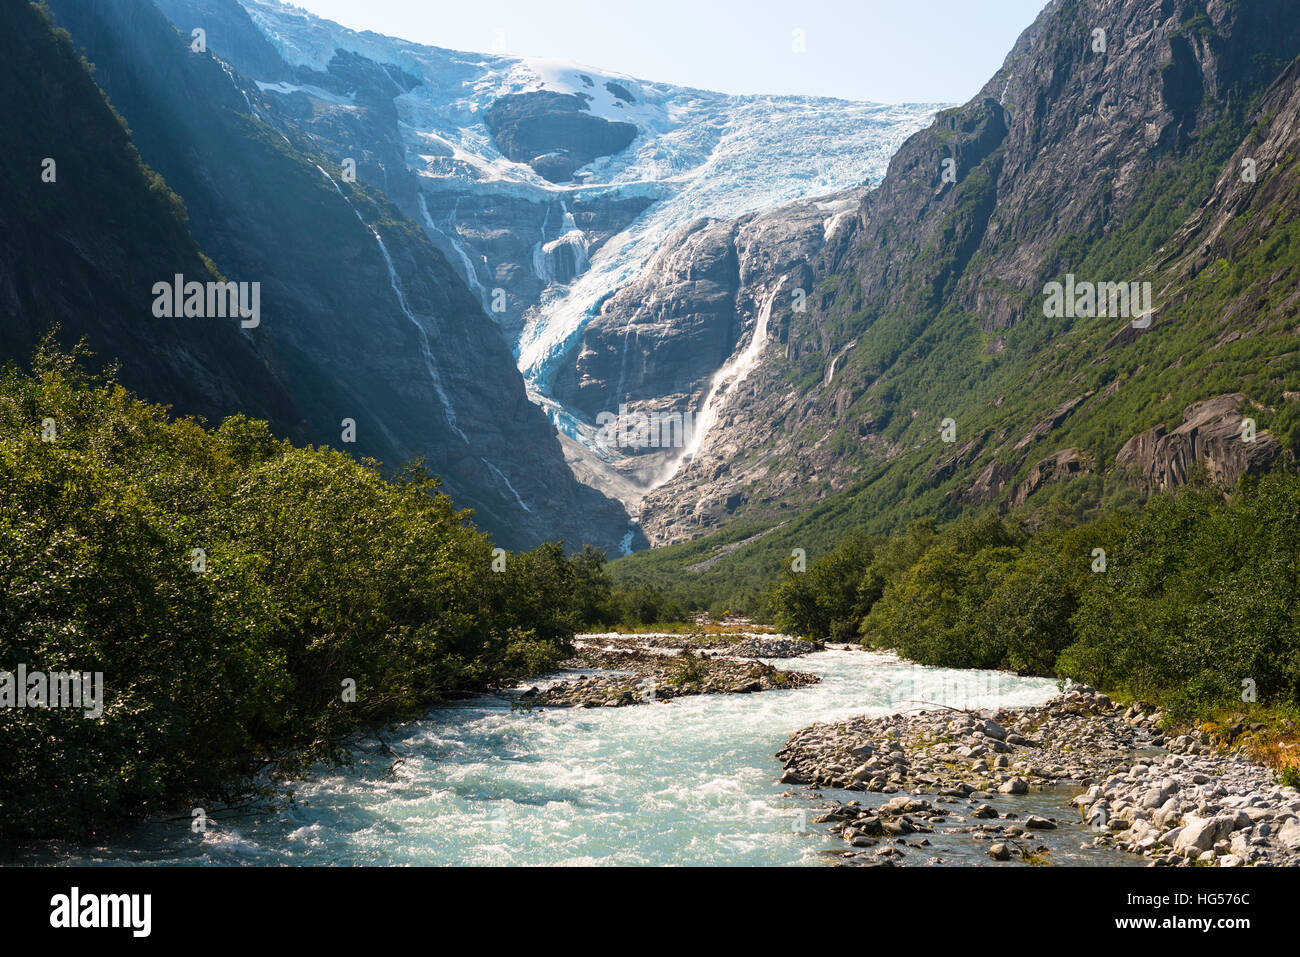 La Norvège paysage pittoresque avec des montagnes, des glaciers et la rivière. Le Glacier Briksdal est partie de la glace de glacier Jostedal champ. Banque D'Images